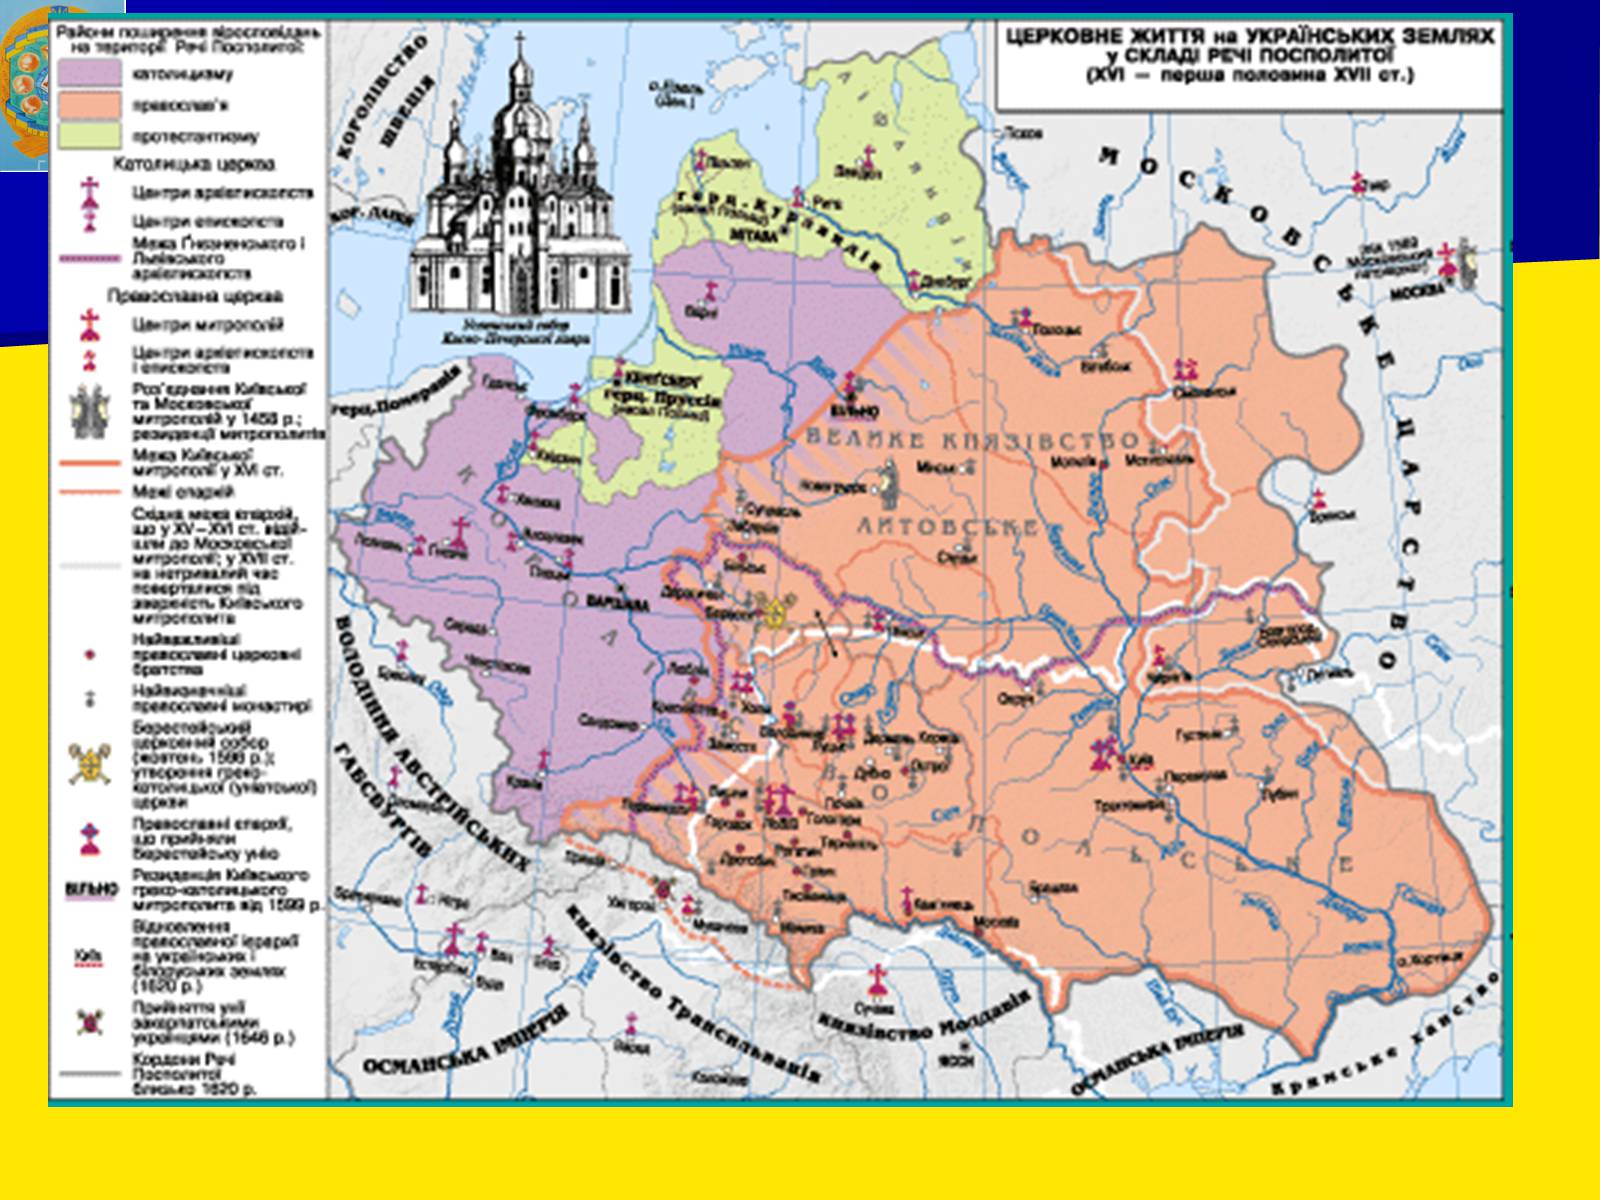 Речи посполитой это польша. Карта речи Посполитой 16 века. Карты речи Посполитой 16-17 век. Речь Посполитая Польша 17 веке. Карта речь Посполитая 16 век.